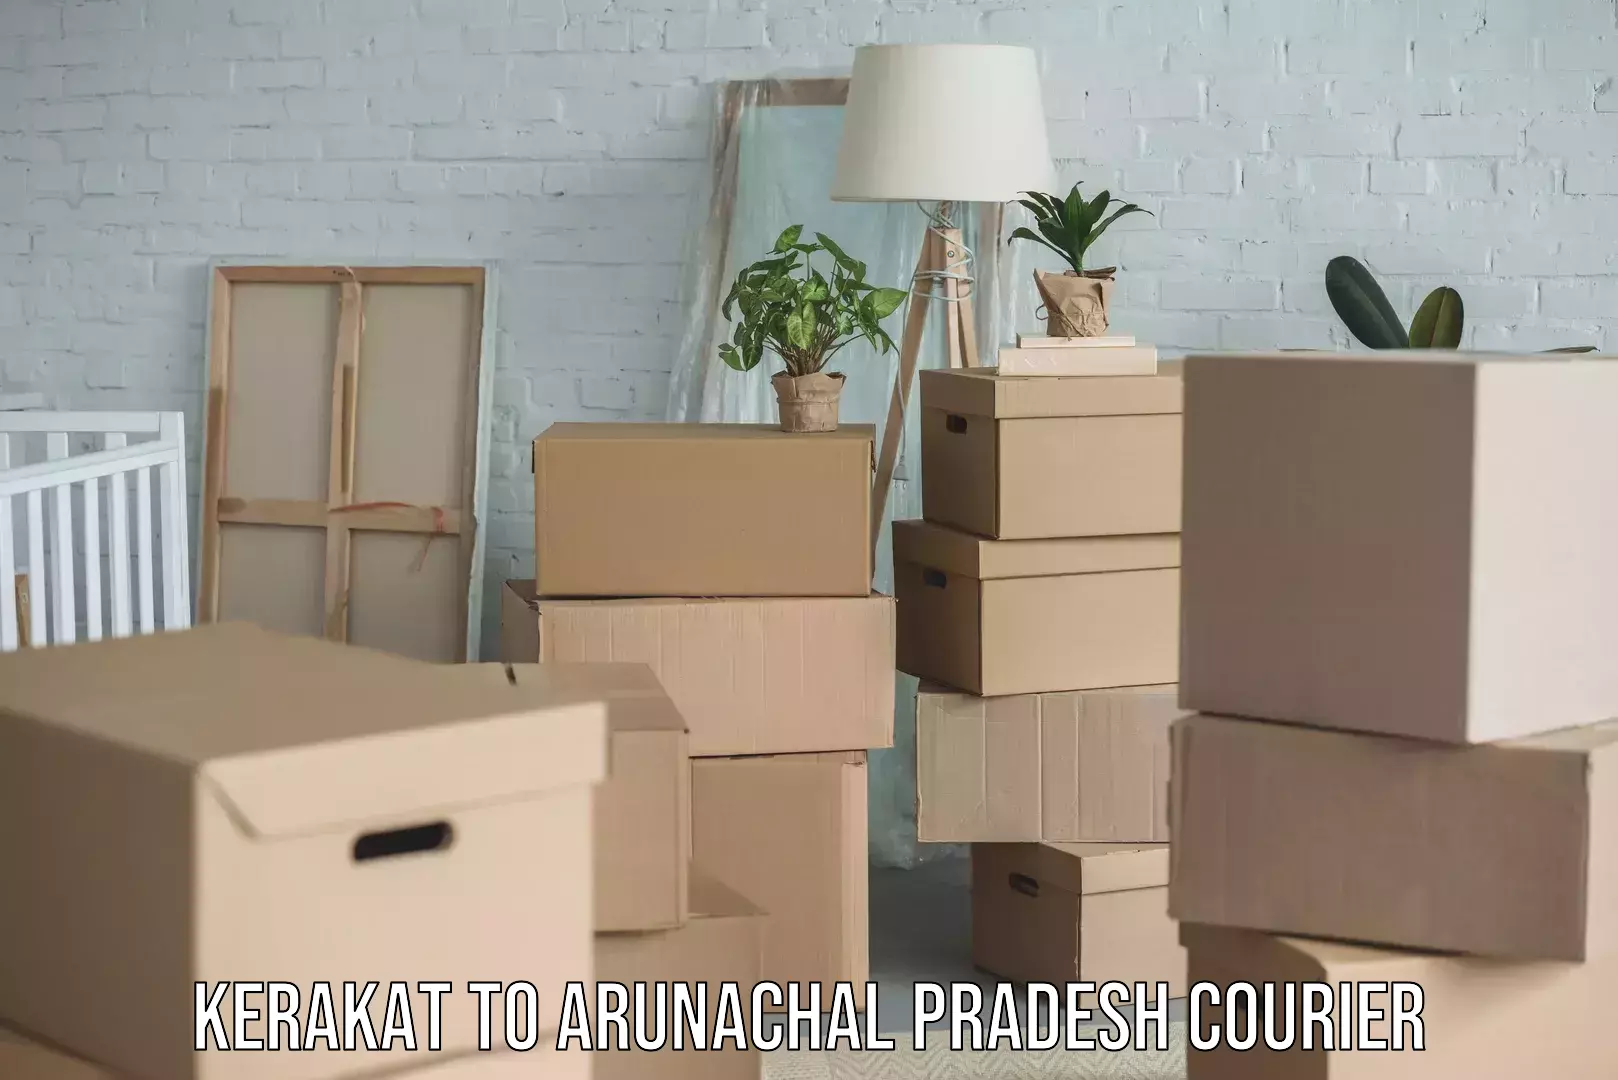 Efficient furniture movers Kerakat to Arunachal Pradesh